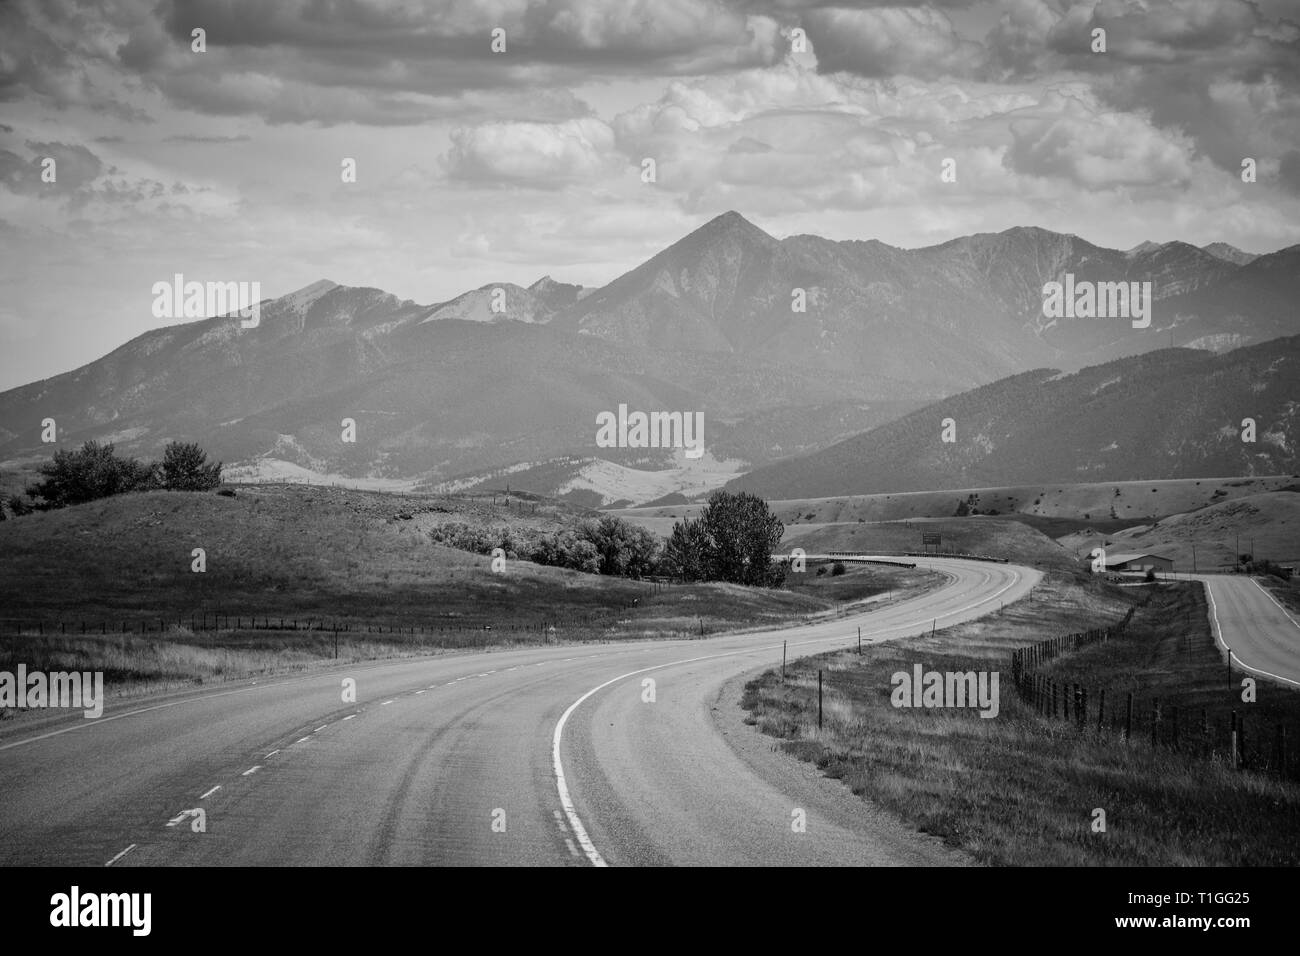 Une vue sereine et d'une chaîne de montagnes du Montana avec un pré en premier plan avec une autoroute s'enroulant vers l'horizon en MT Banque D'Images